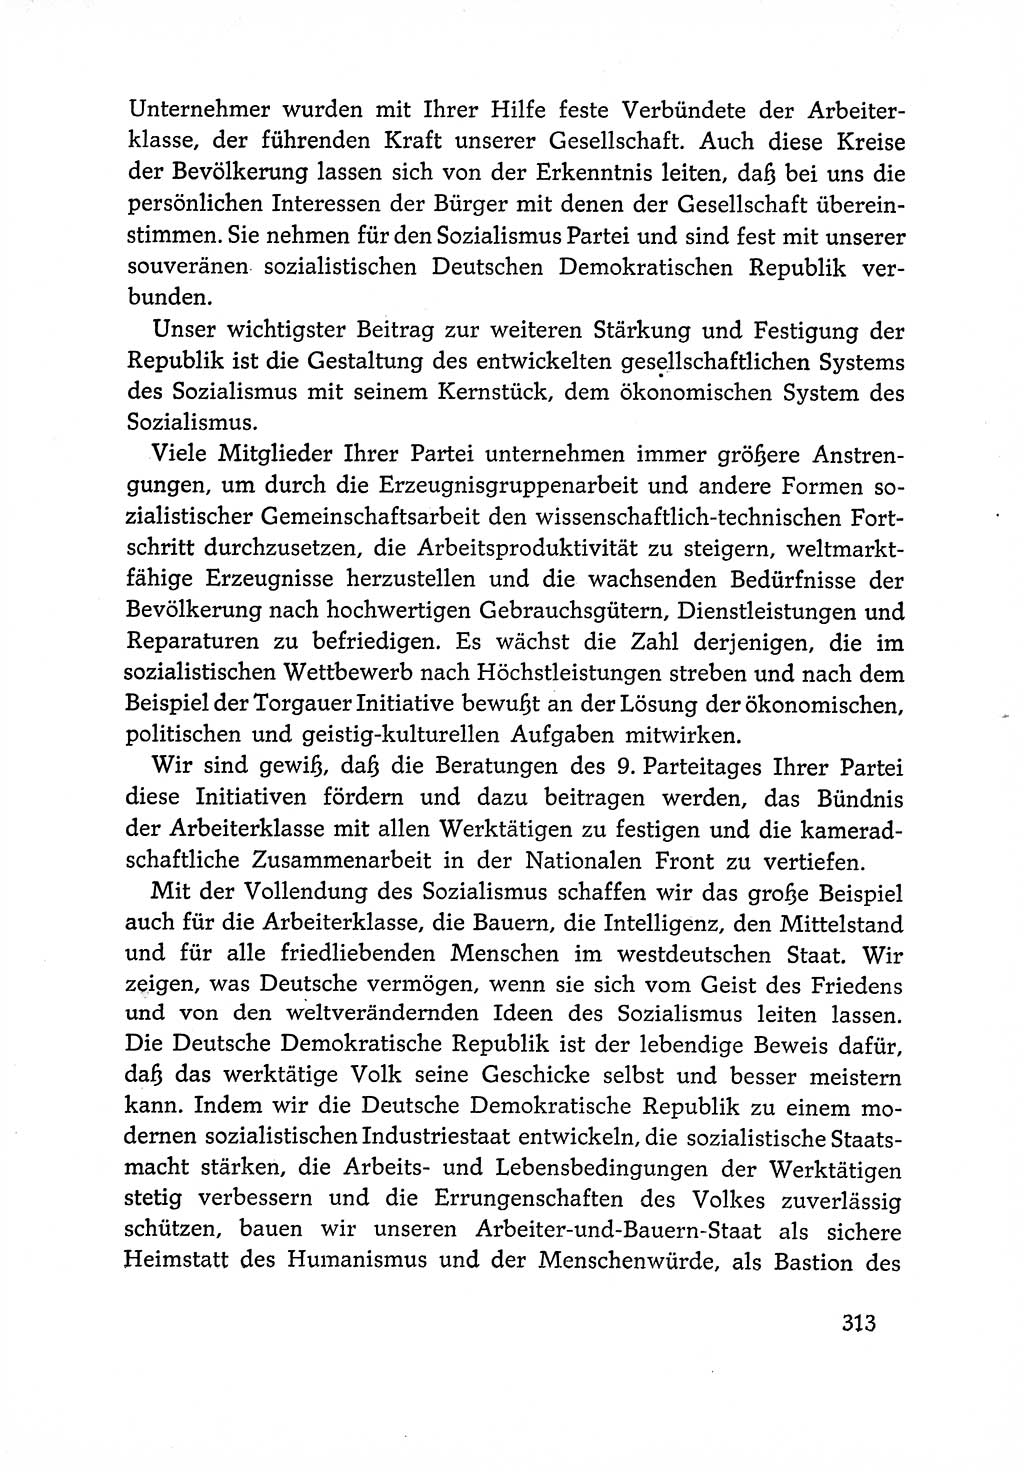 Dokumente der Sozialistischen Einheitspartei Deutschlands (SED) [Deutsche Demokratische Republik (DDR)] 1966-1967, Seite 313 (Dok. SED DDR 1966-1967, S. 313)